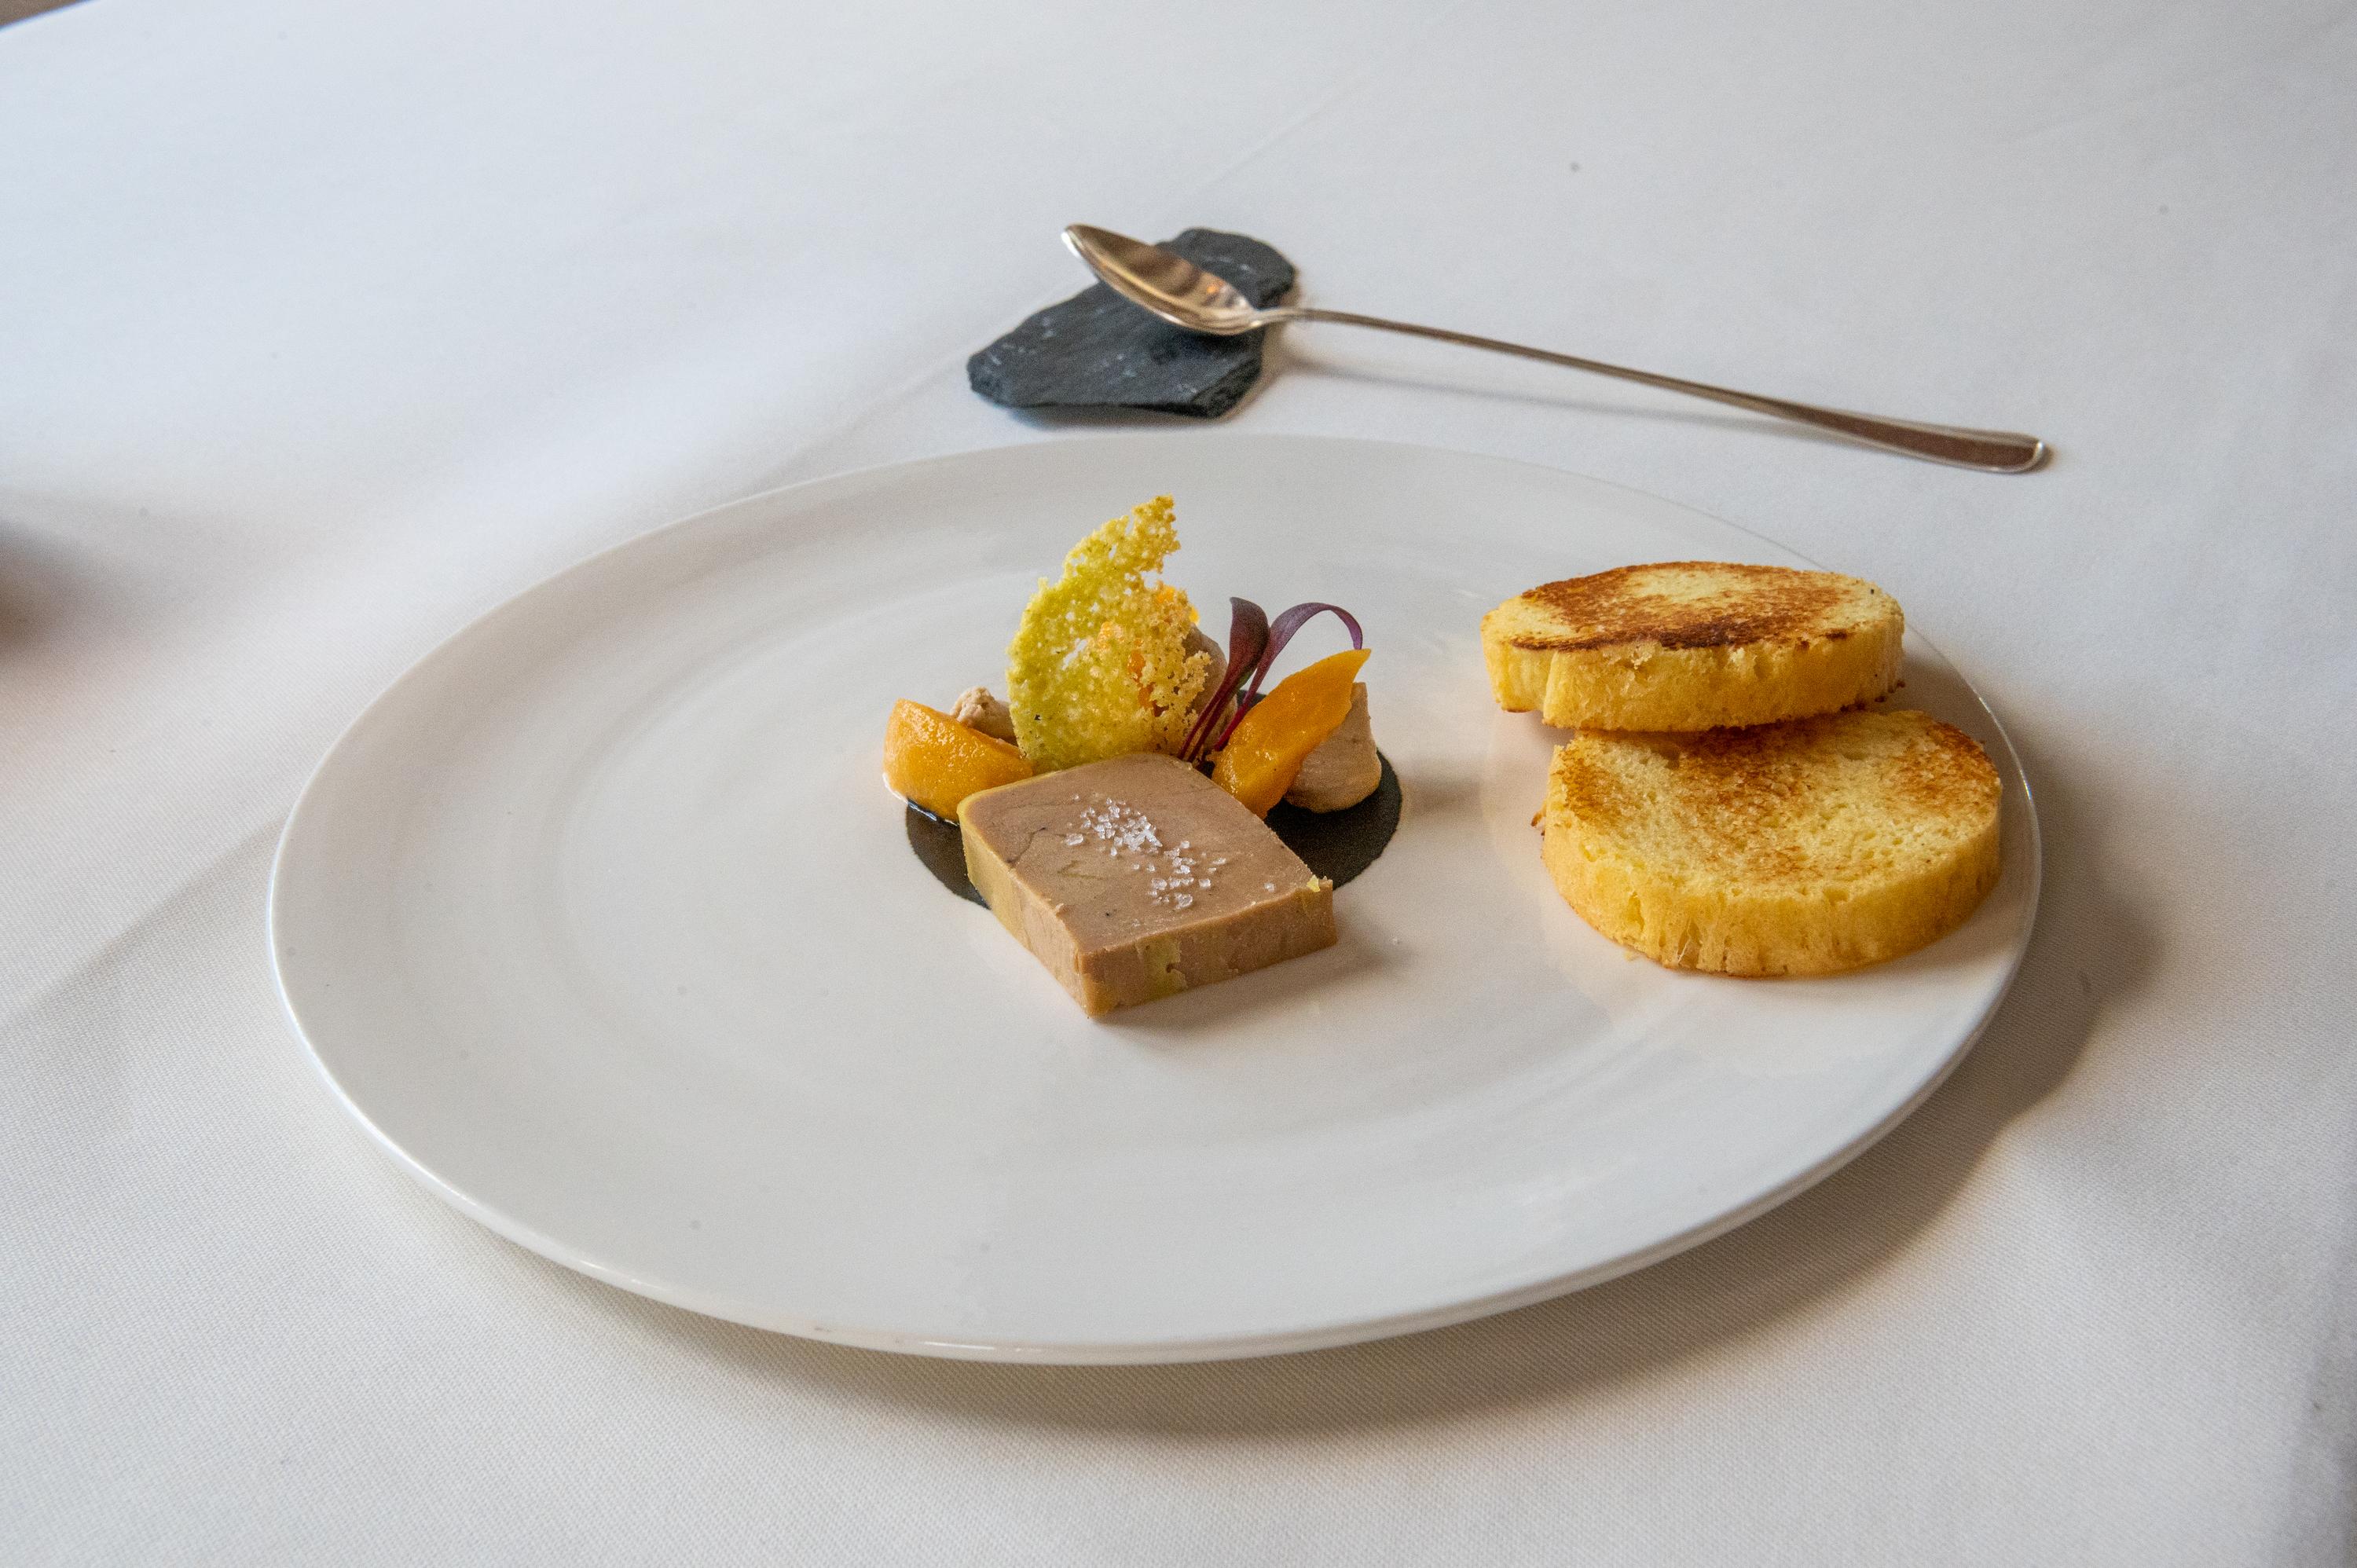 Foie gras: des alternatives respectueuses des animaux - QUATRE PATTES en  Suisse - organisation de protection des animaux